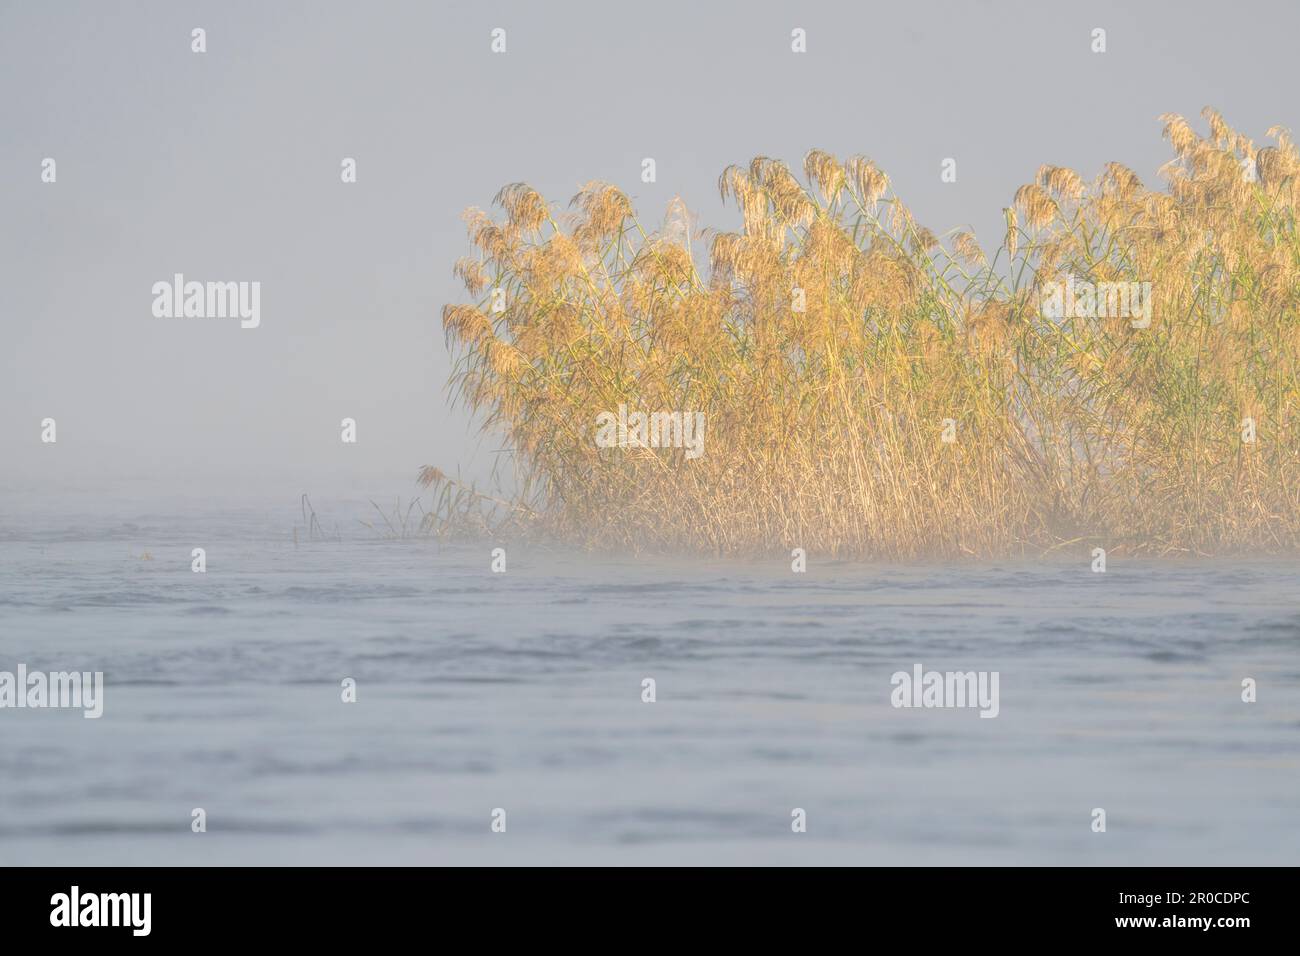 Brume s'élevant au-dessus de la surface de l'eau de la rivière Zambèze. Les plantes papyrus se trouvent dans l'eau. Rivière Zambèze, chutes Victoria, Zimbabwe Banque D'Images